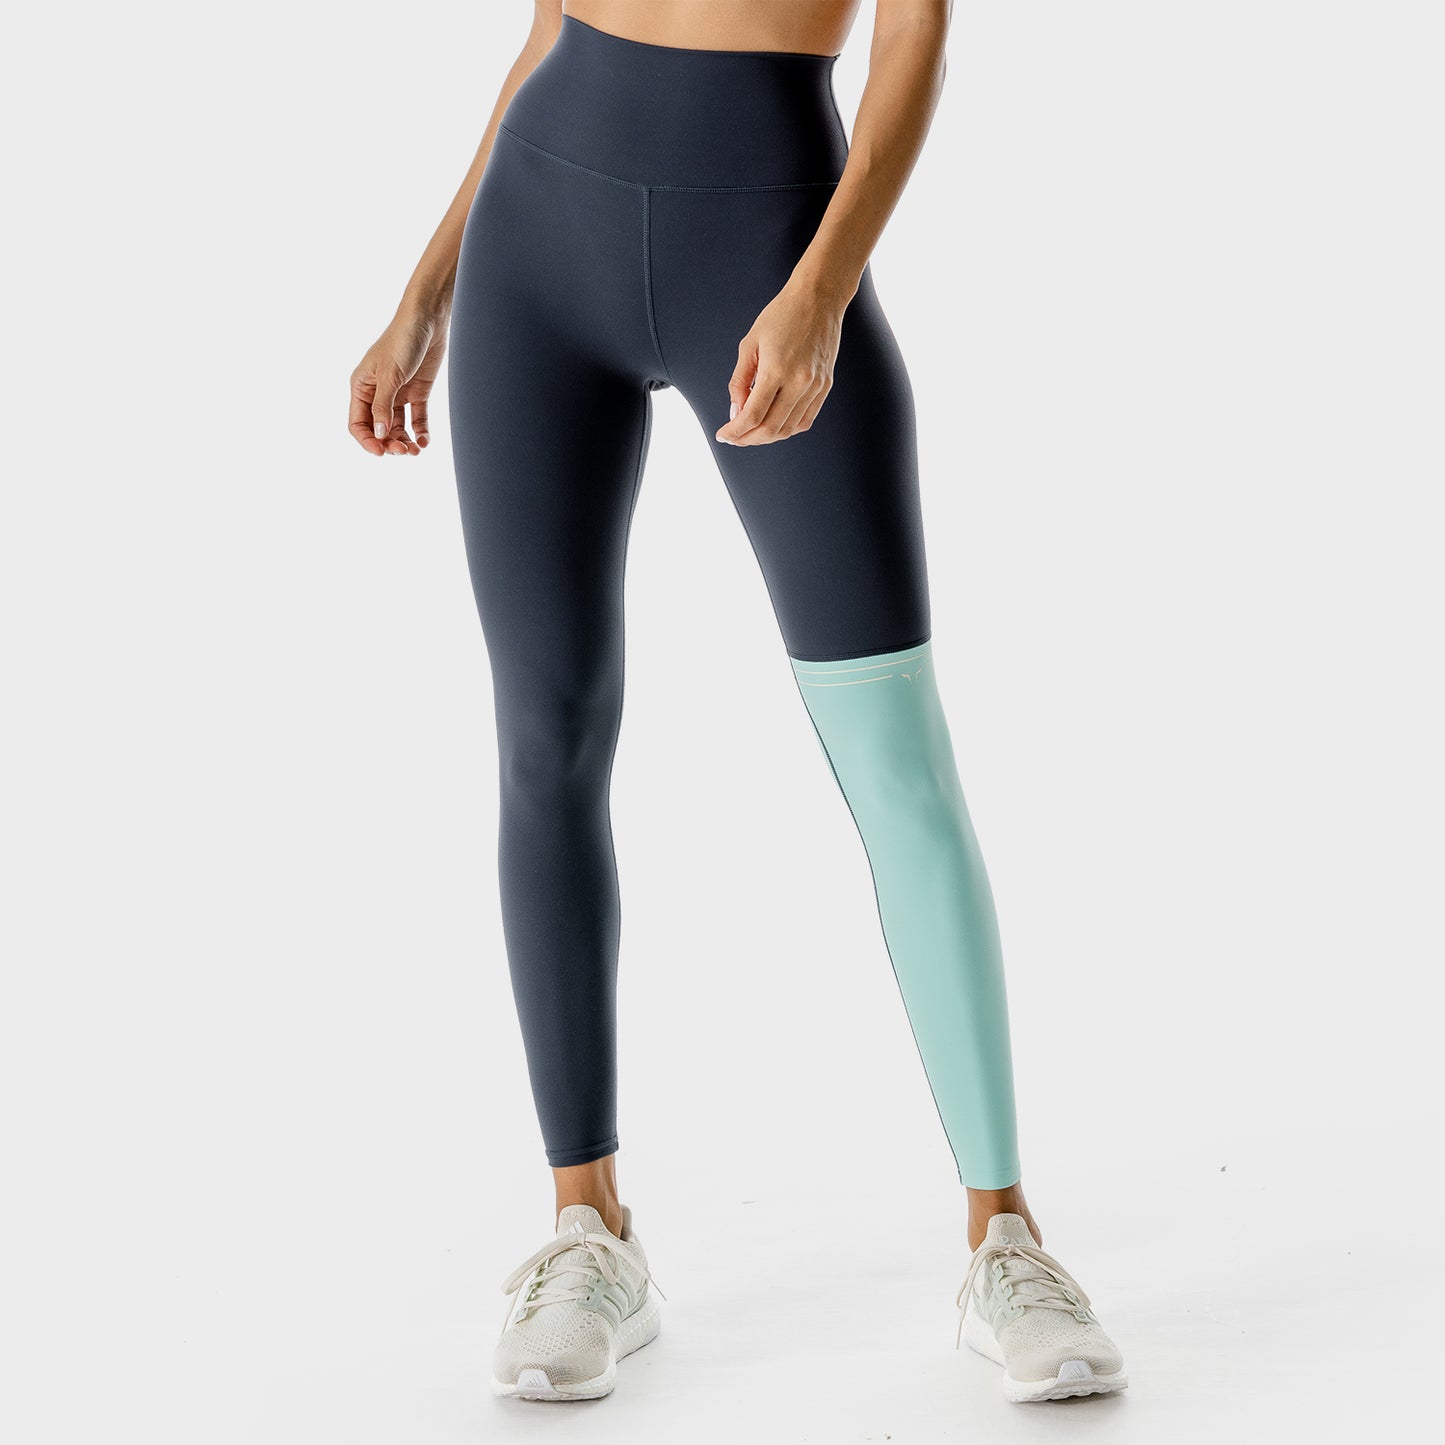 SQUATWOL-workout-clothes-lab-360-colour-block-leggings-blue-gym-leggings-for-women